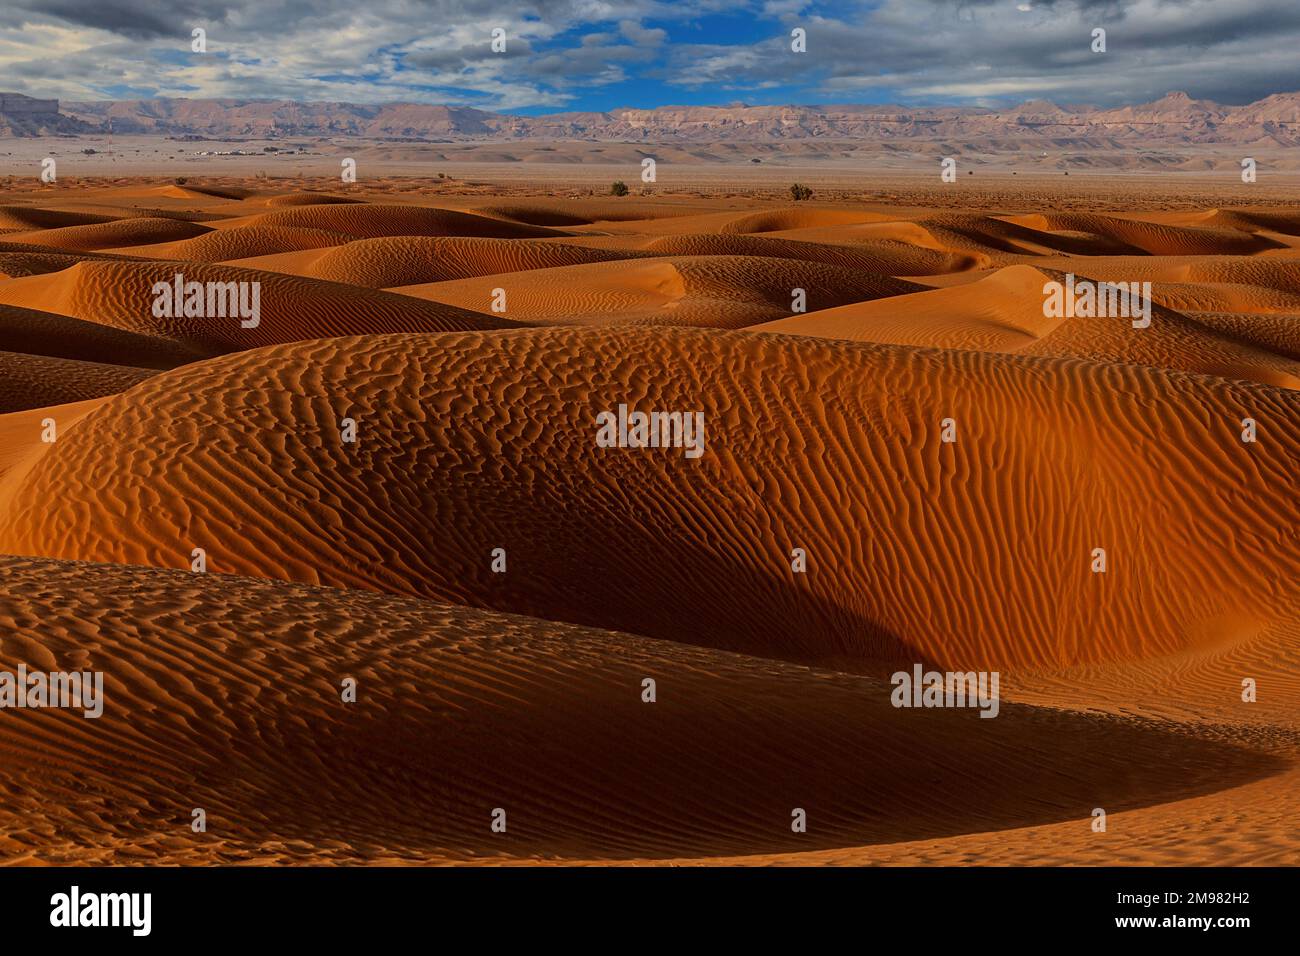 Dunes de sable ondulées dans un paysage désertique avec toile de fond de montagne, Arabie Saoudite Banque D'Images